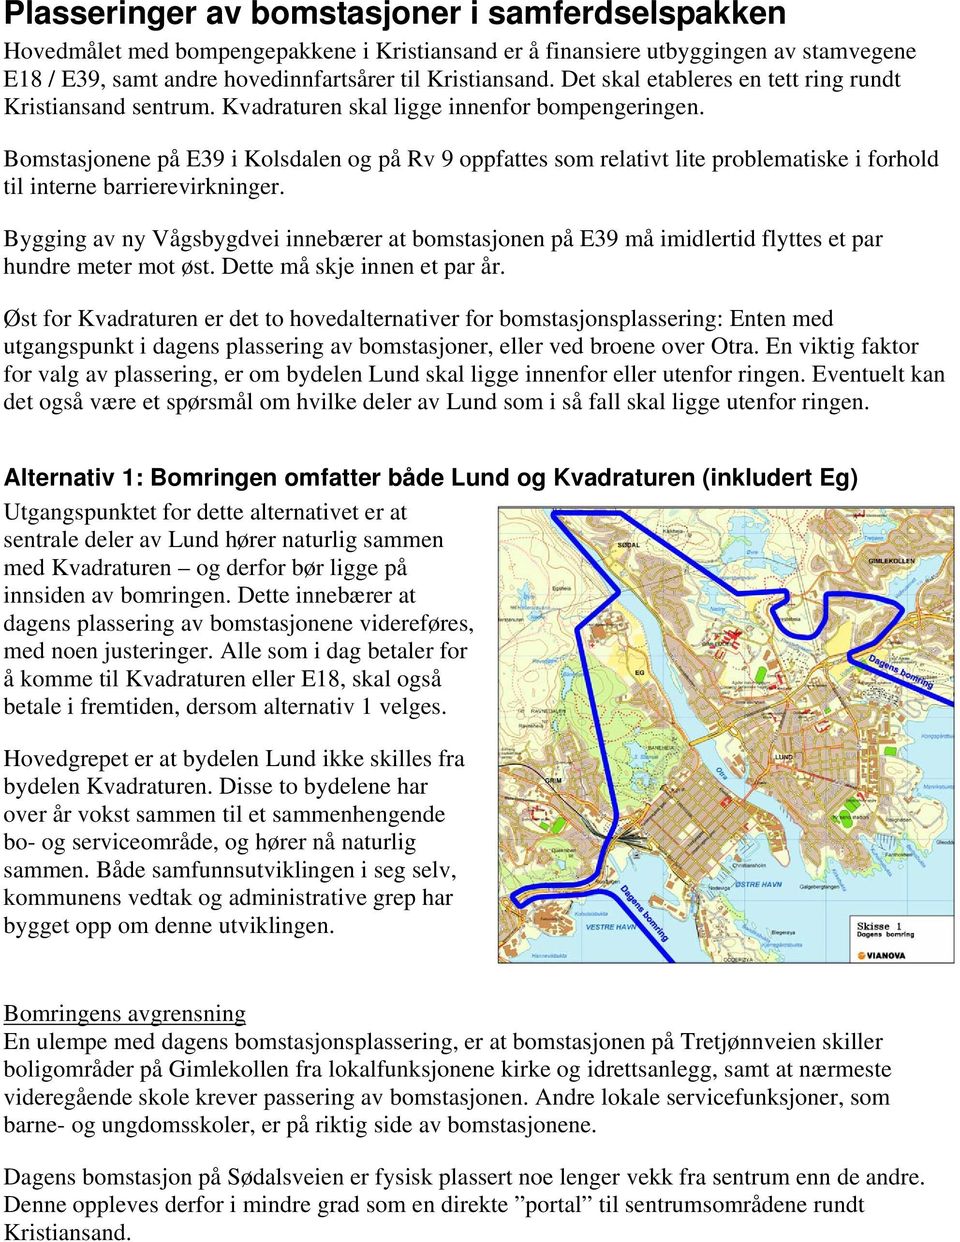 Bomstasjonene på E39 i Kolsdalen og på Rv 9 oppfattes som relativt lite problematiske i forhold til interne barrierevirkninger.